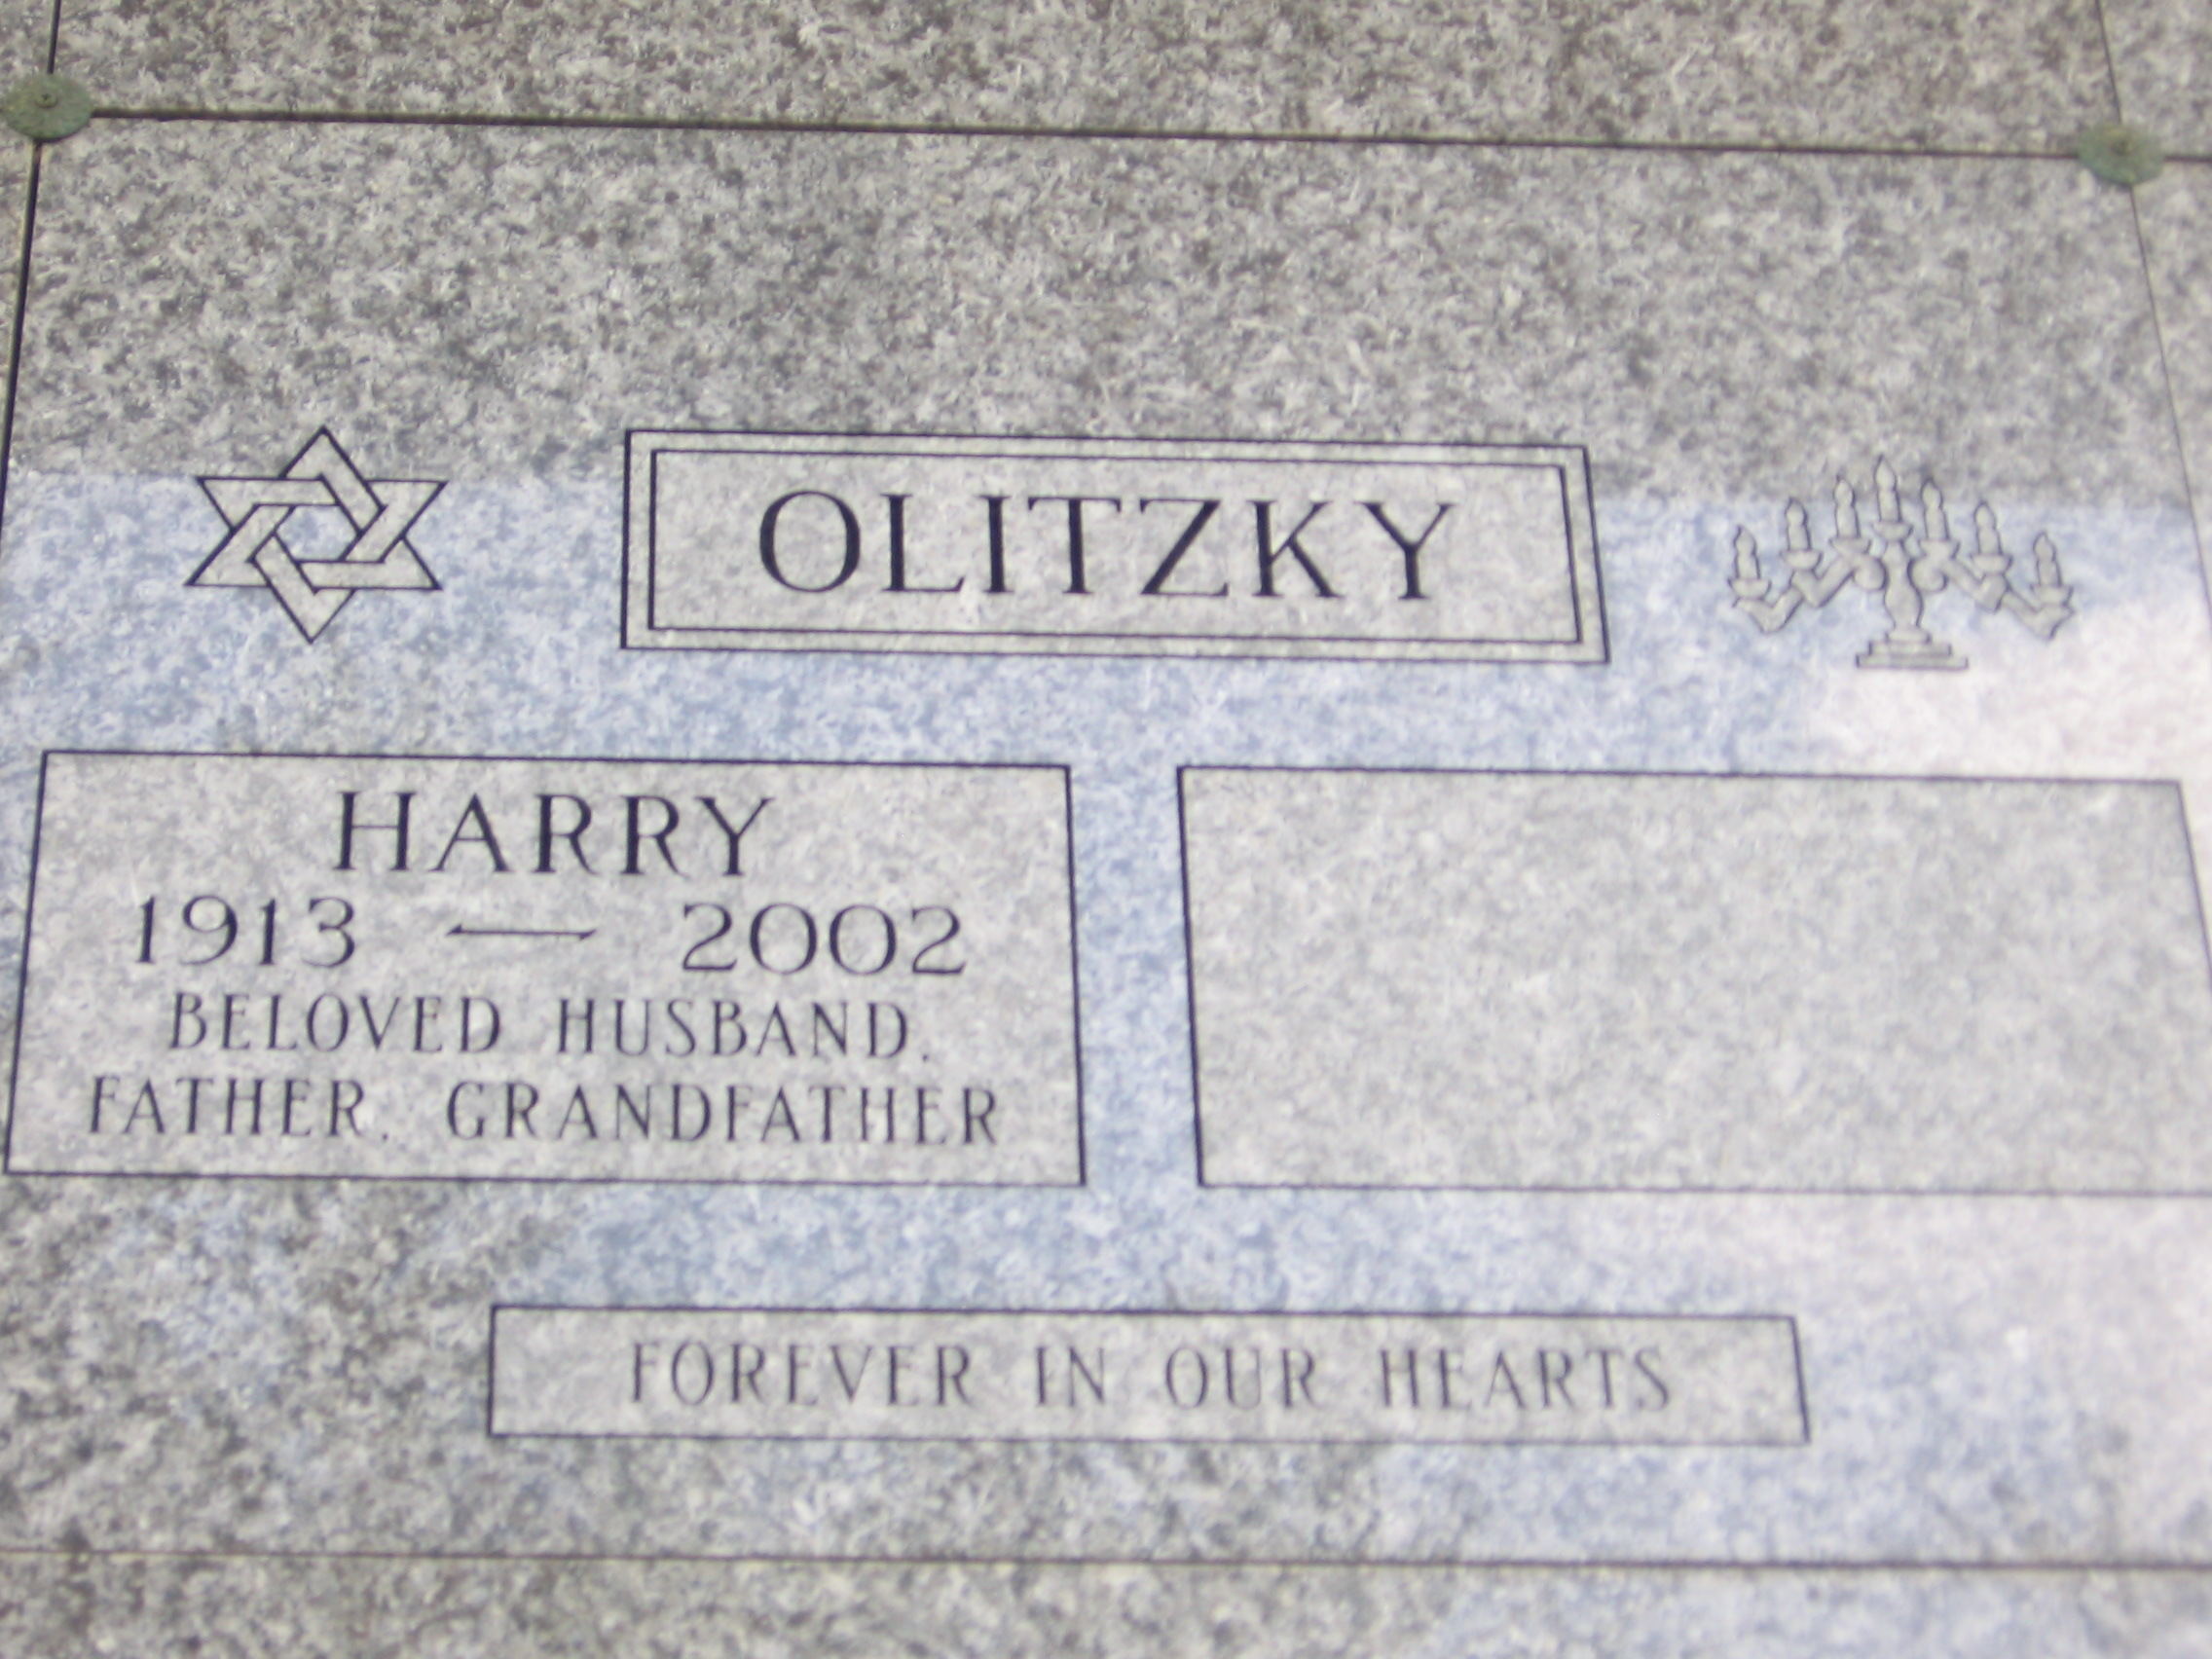 Harry Olitzky